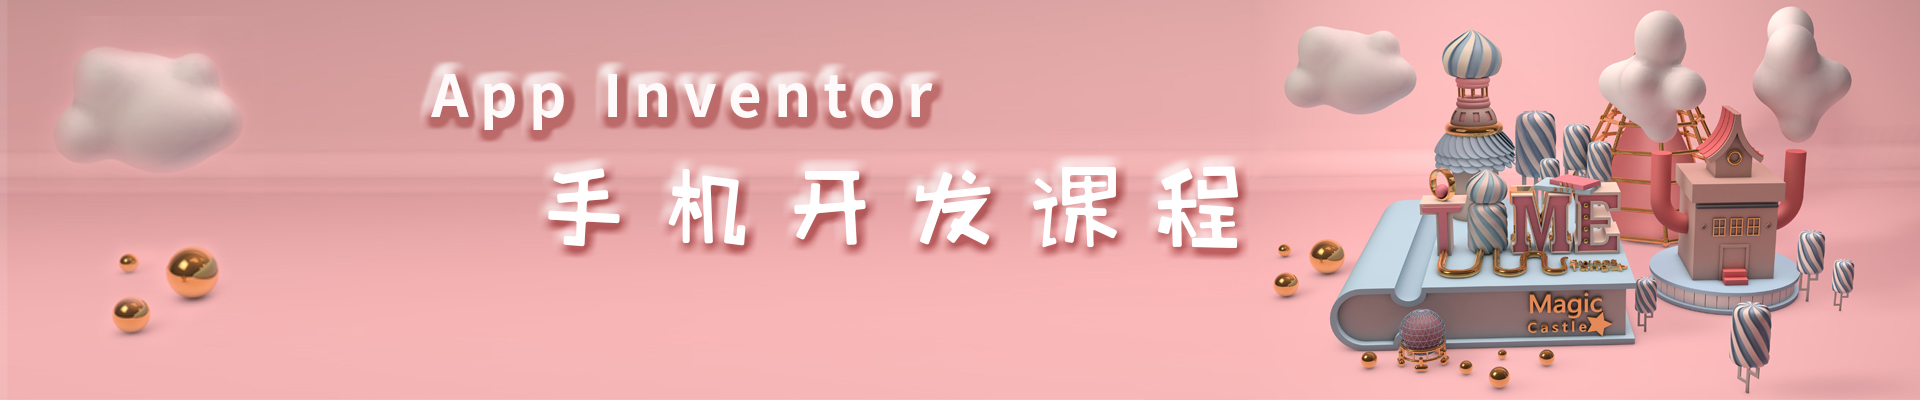 杭州西子国际小码王少儿编程培训机构